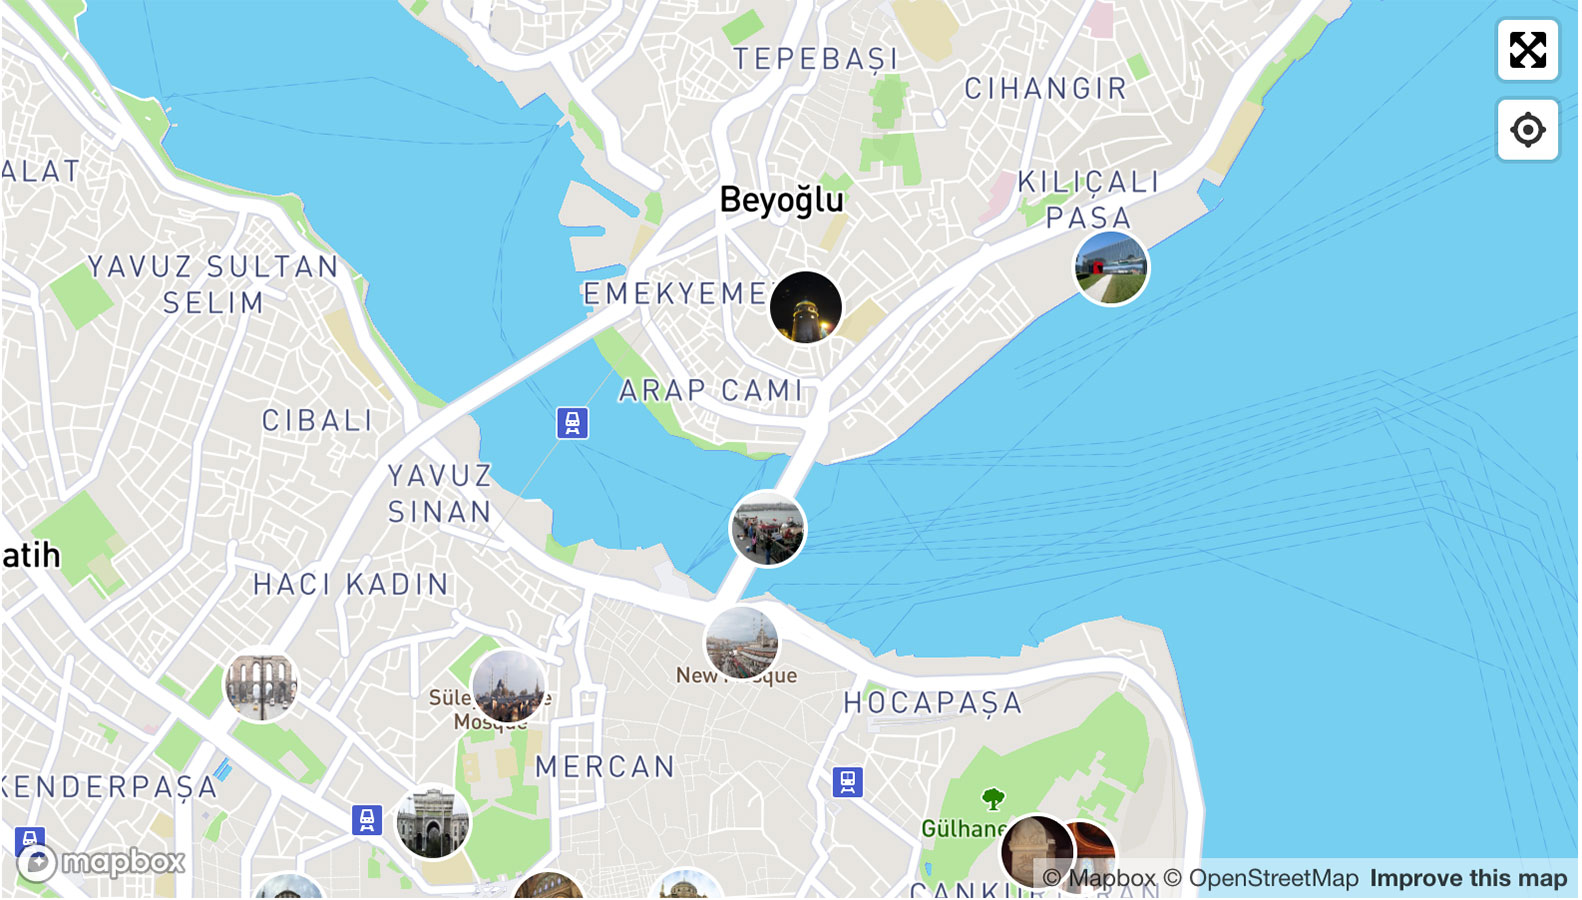 Центр стамбула на карте. Европейская часть Стамбула на карте. Истикляль Стамбул на карте. Европейская часть Стамбула на карте на русском языке. Карта Стамбула с районами и достопримечательности.